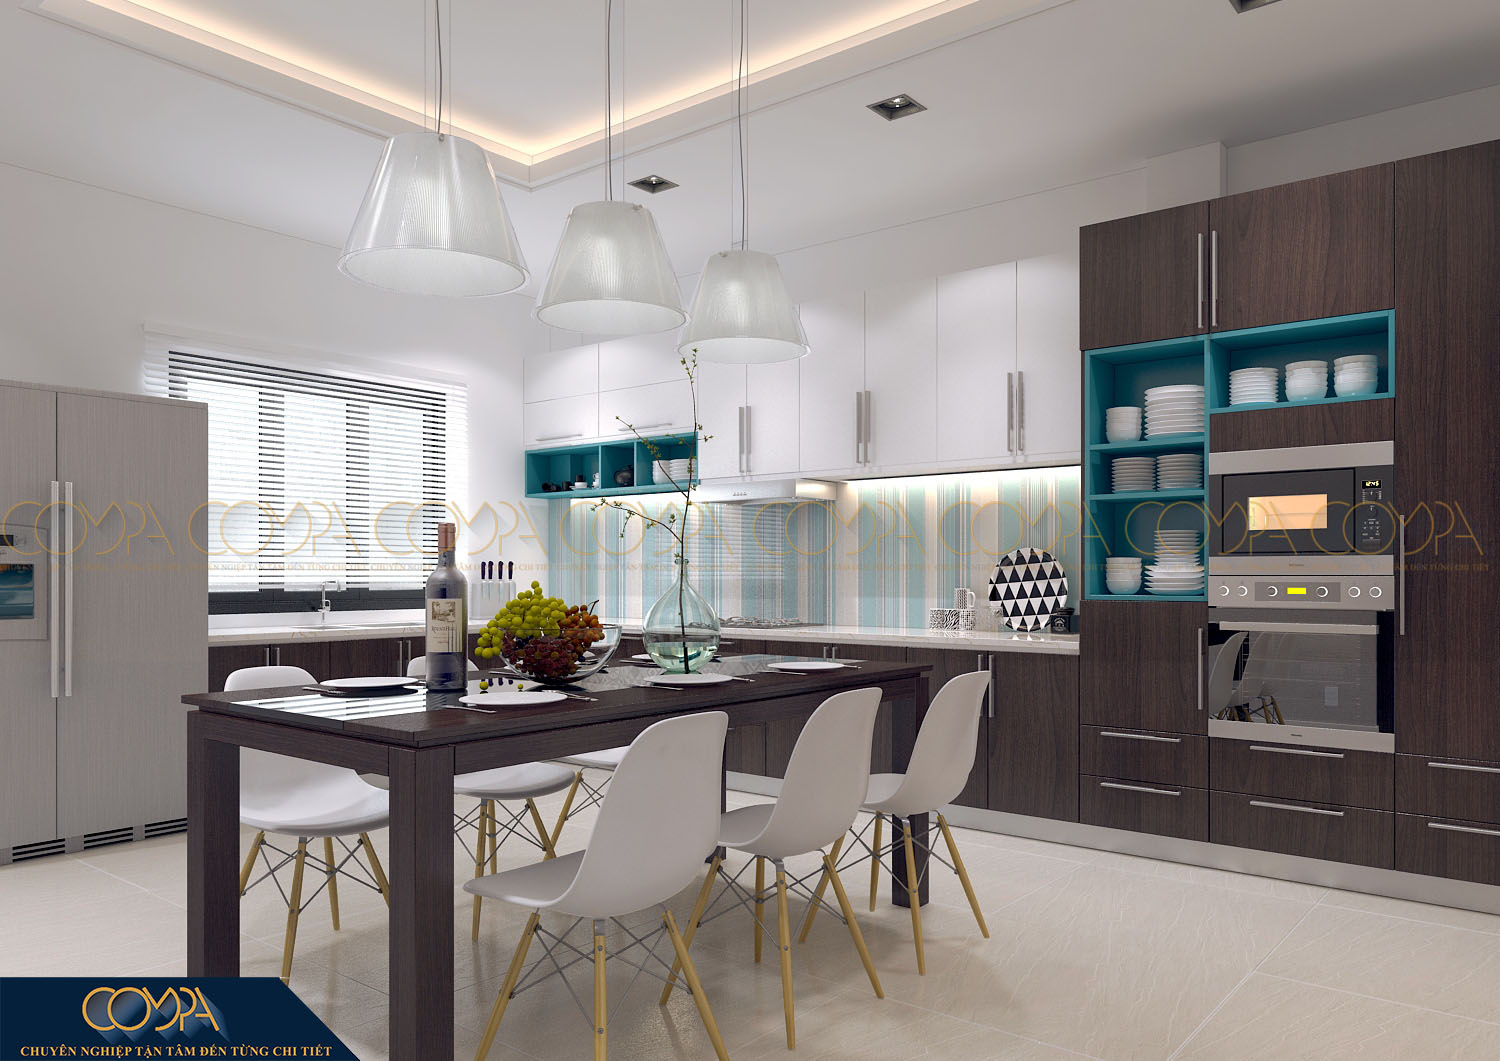 Thiết kế nội thất phòng bếp hiện đại sang trọng với công năng sử dụng cao